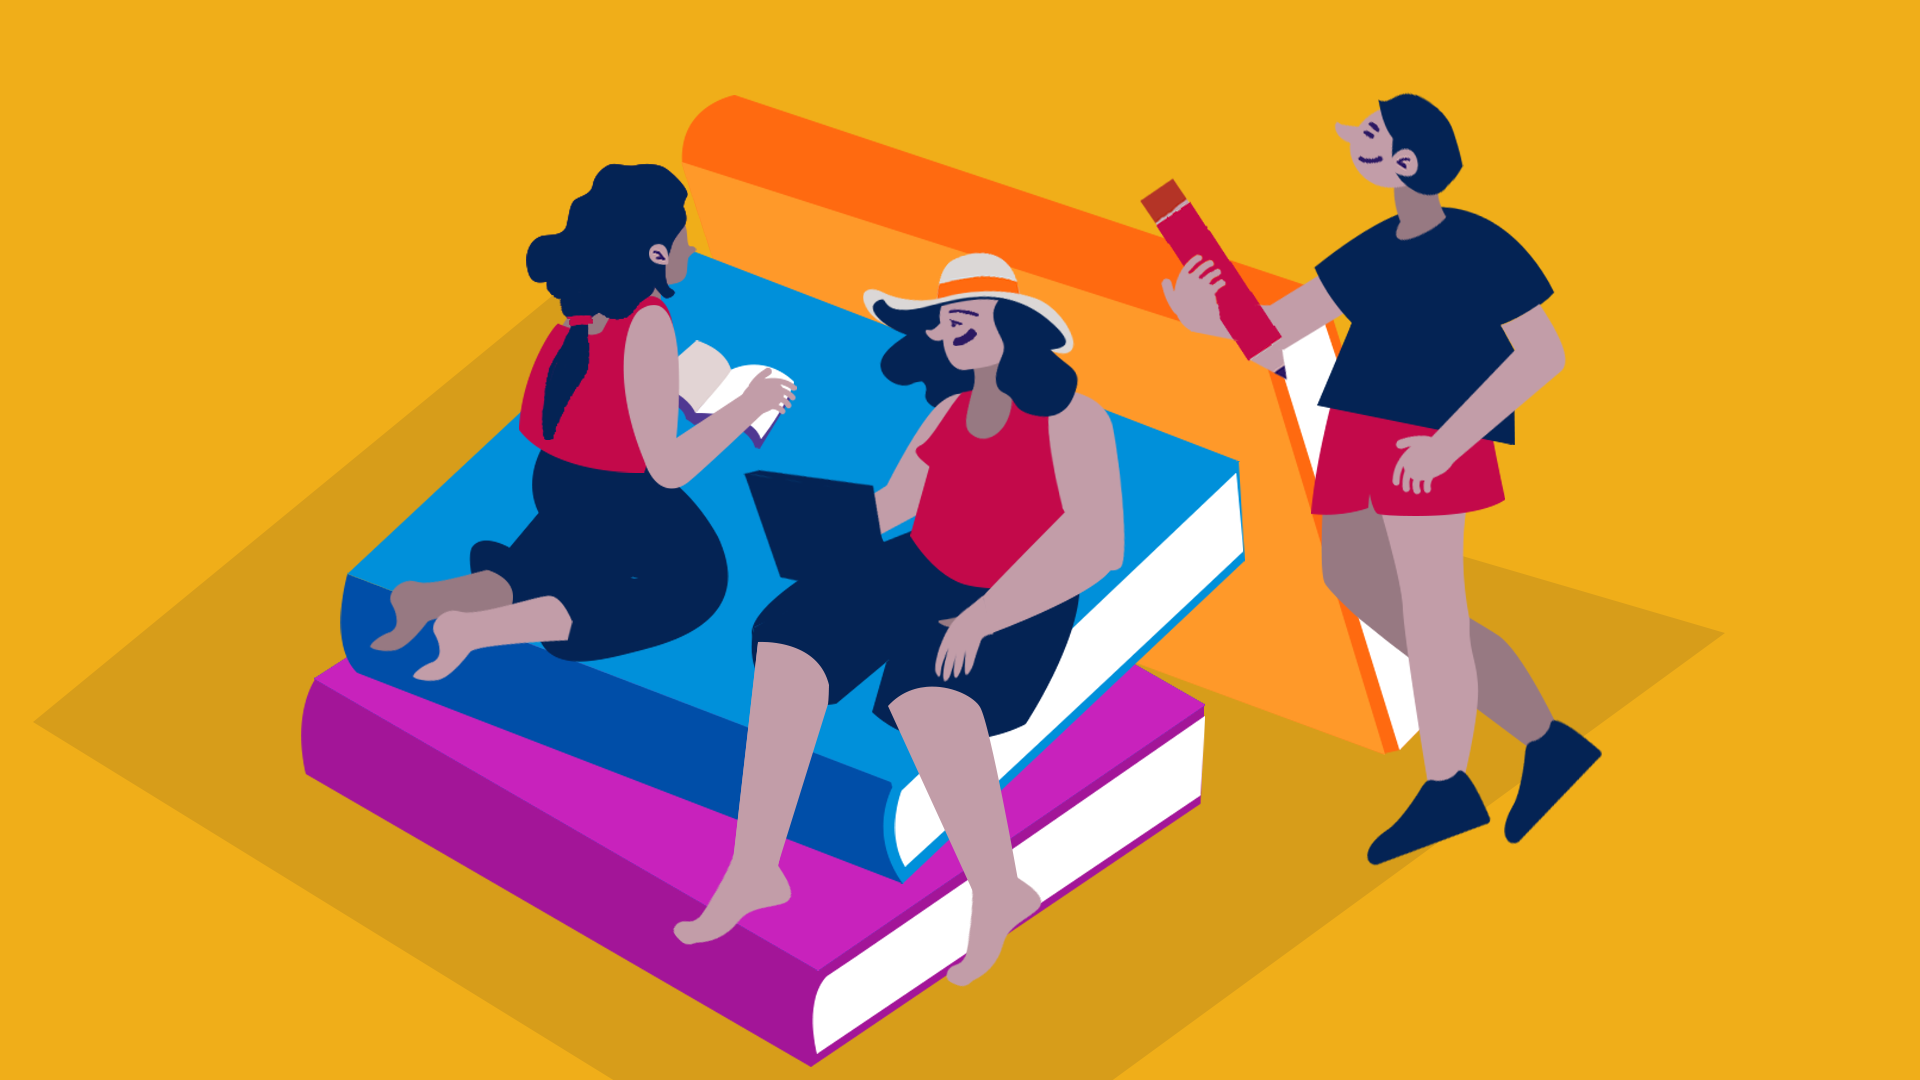 ilustración sobre servicios disponibles el ciclo de verano pucp: 3 estudiantes sentados sobre libros